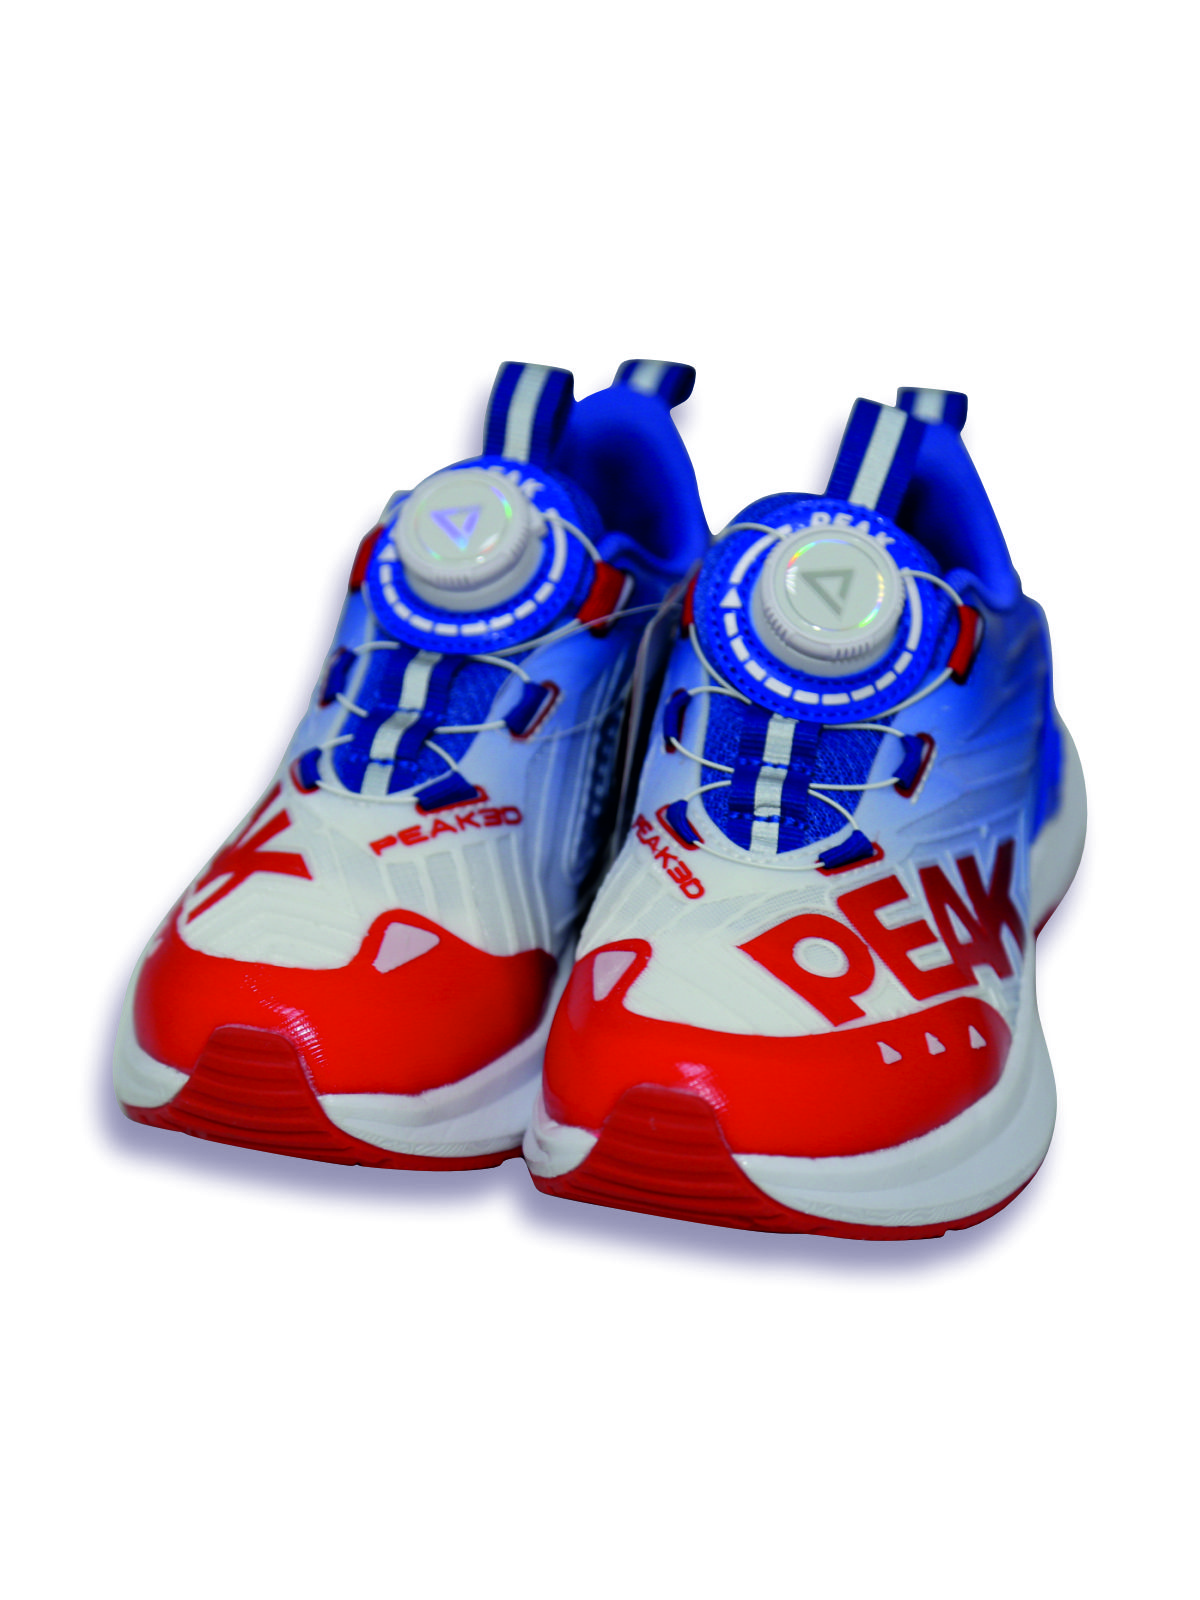 Кроссовки детские PEAK E23, красно-сине-белый, 38 кроссовки детские peak e23 красно сине белый 38